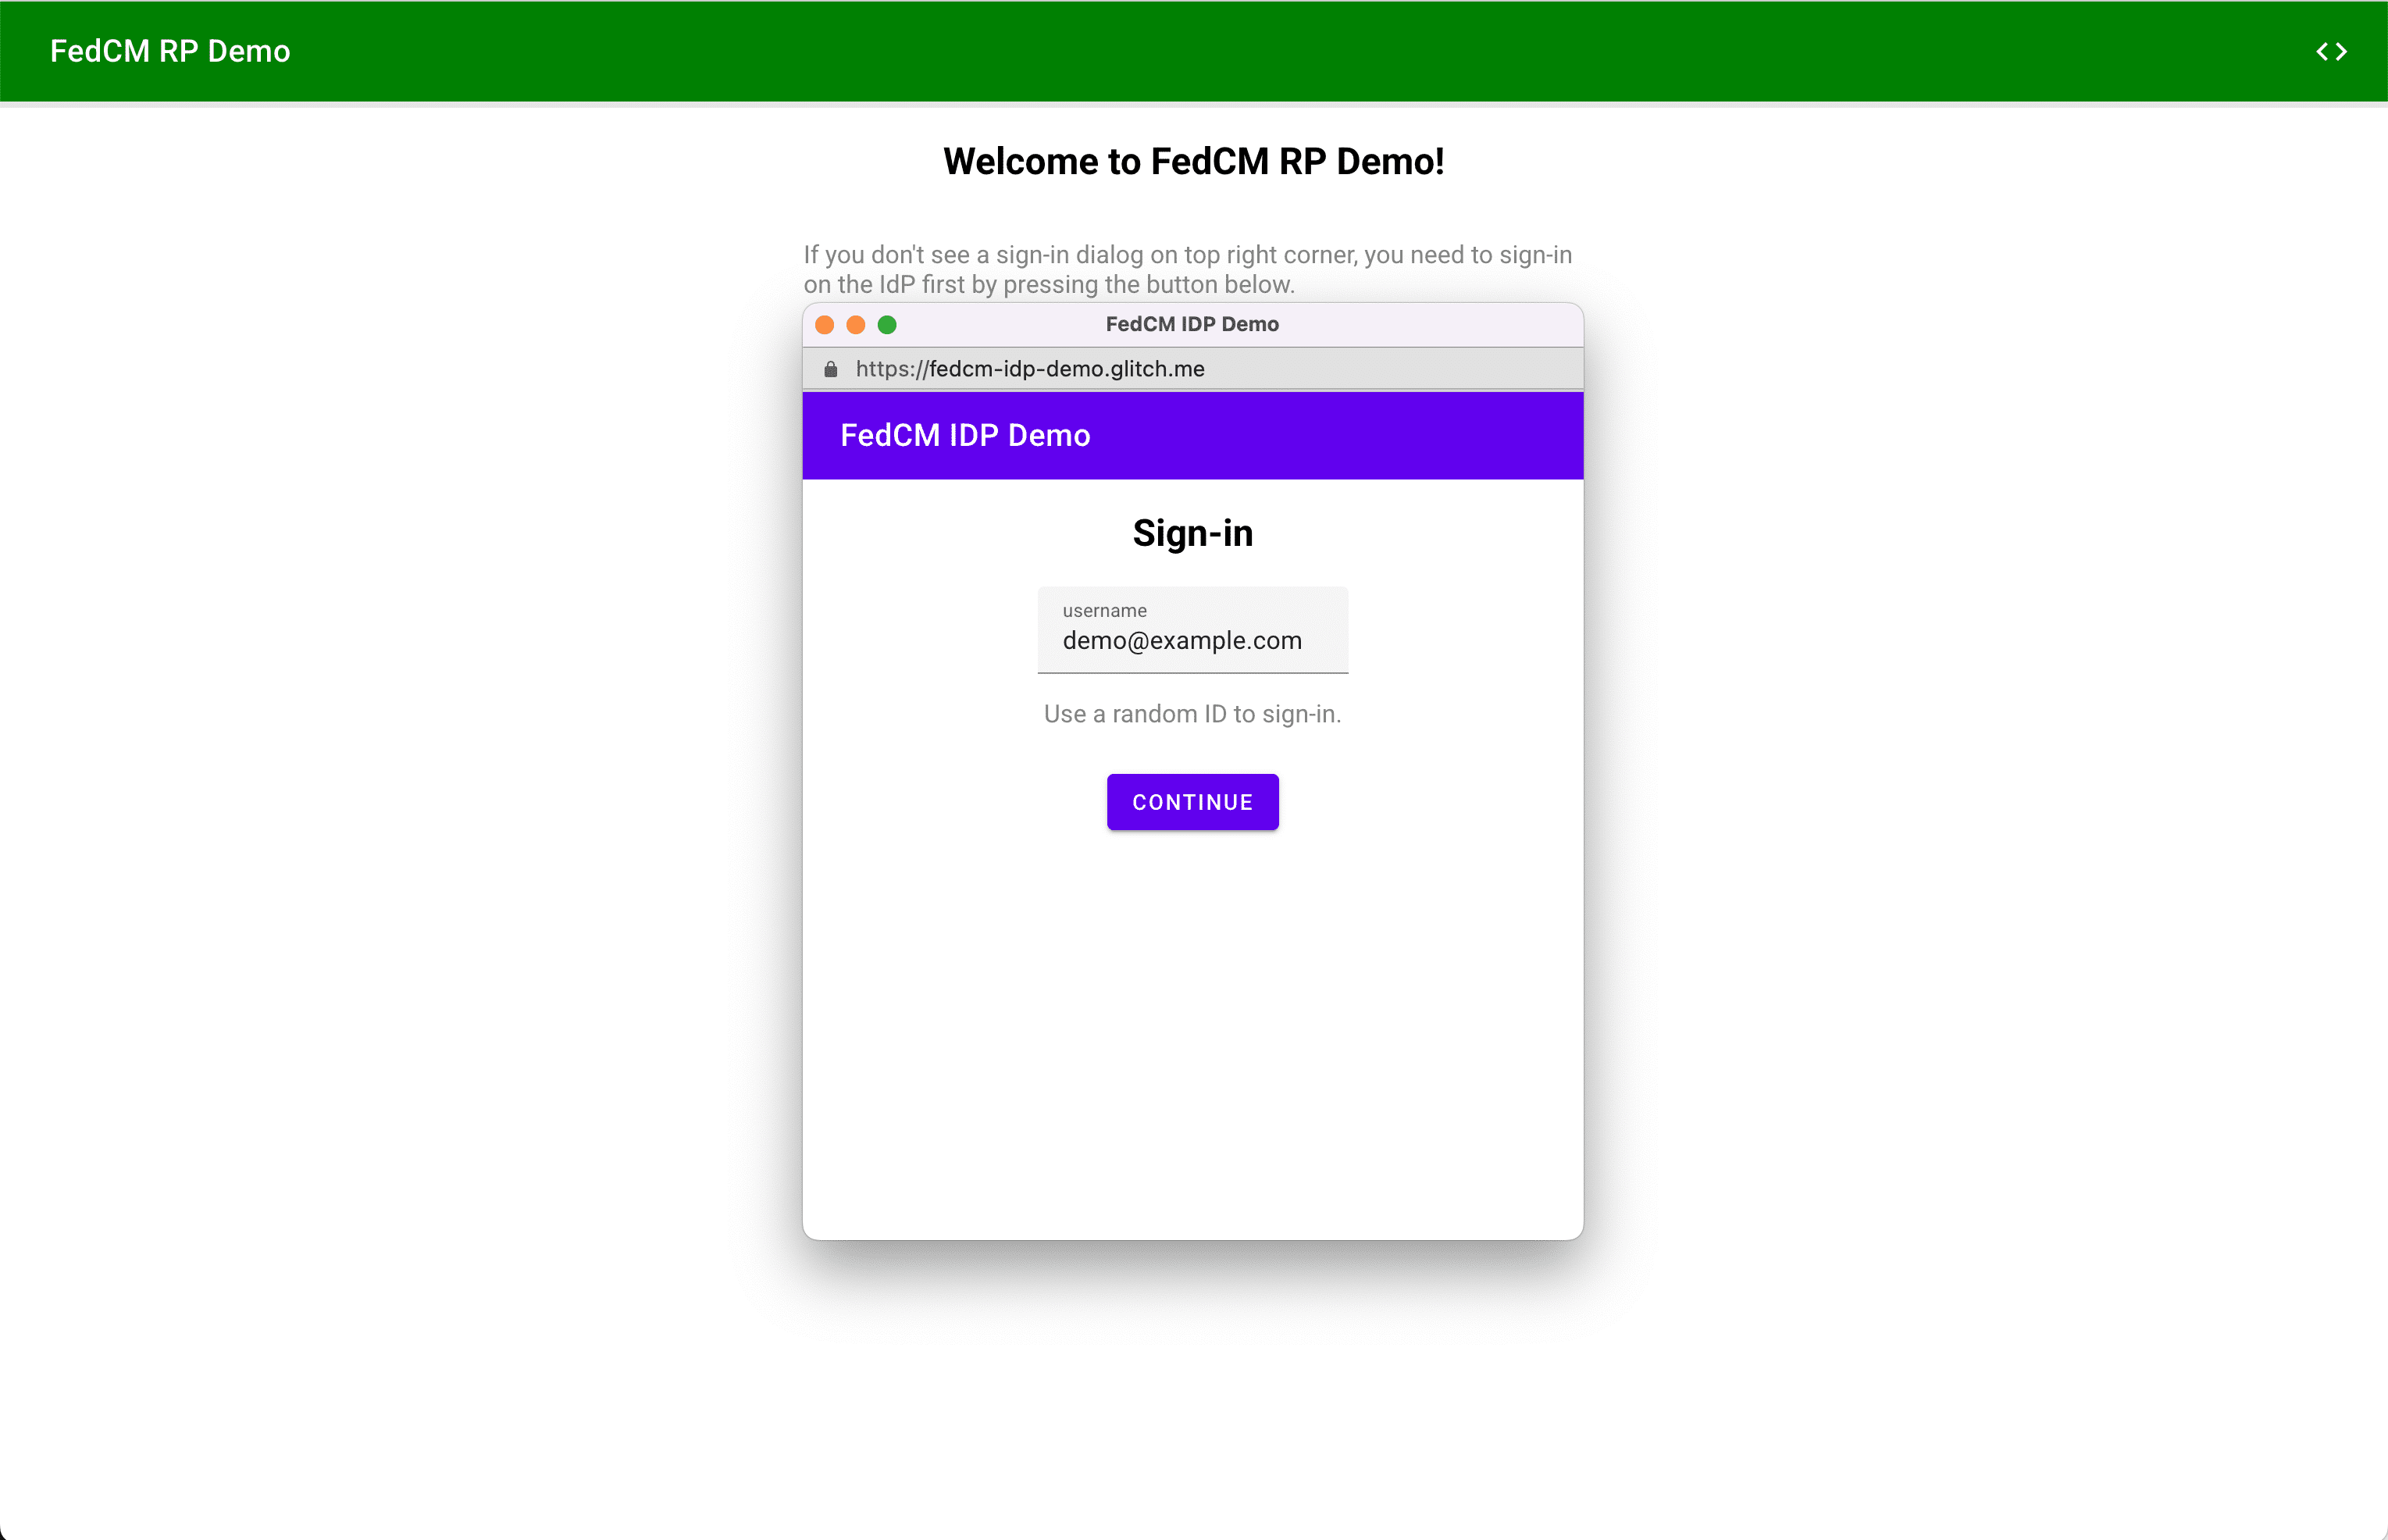 Cửa sổ bật lên sẽ xuất hiện sau khi người dùng nhấp vào nút đăng nhập vào nút IdP.